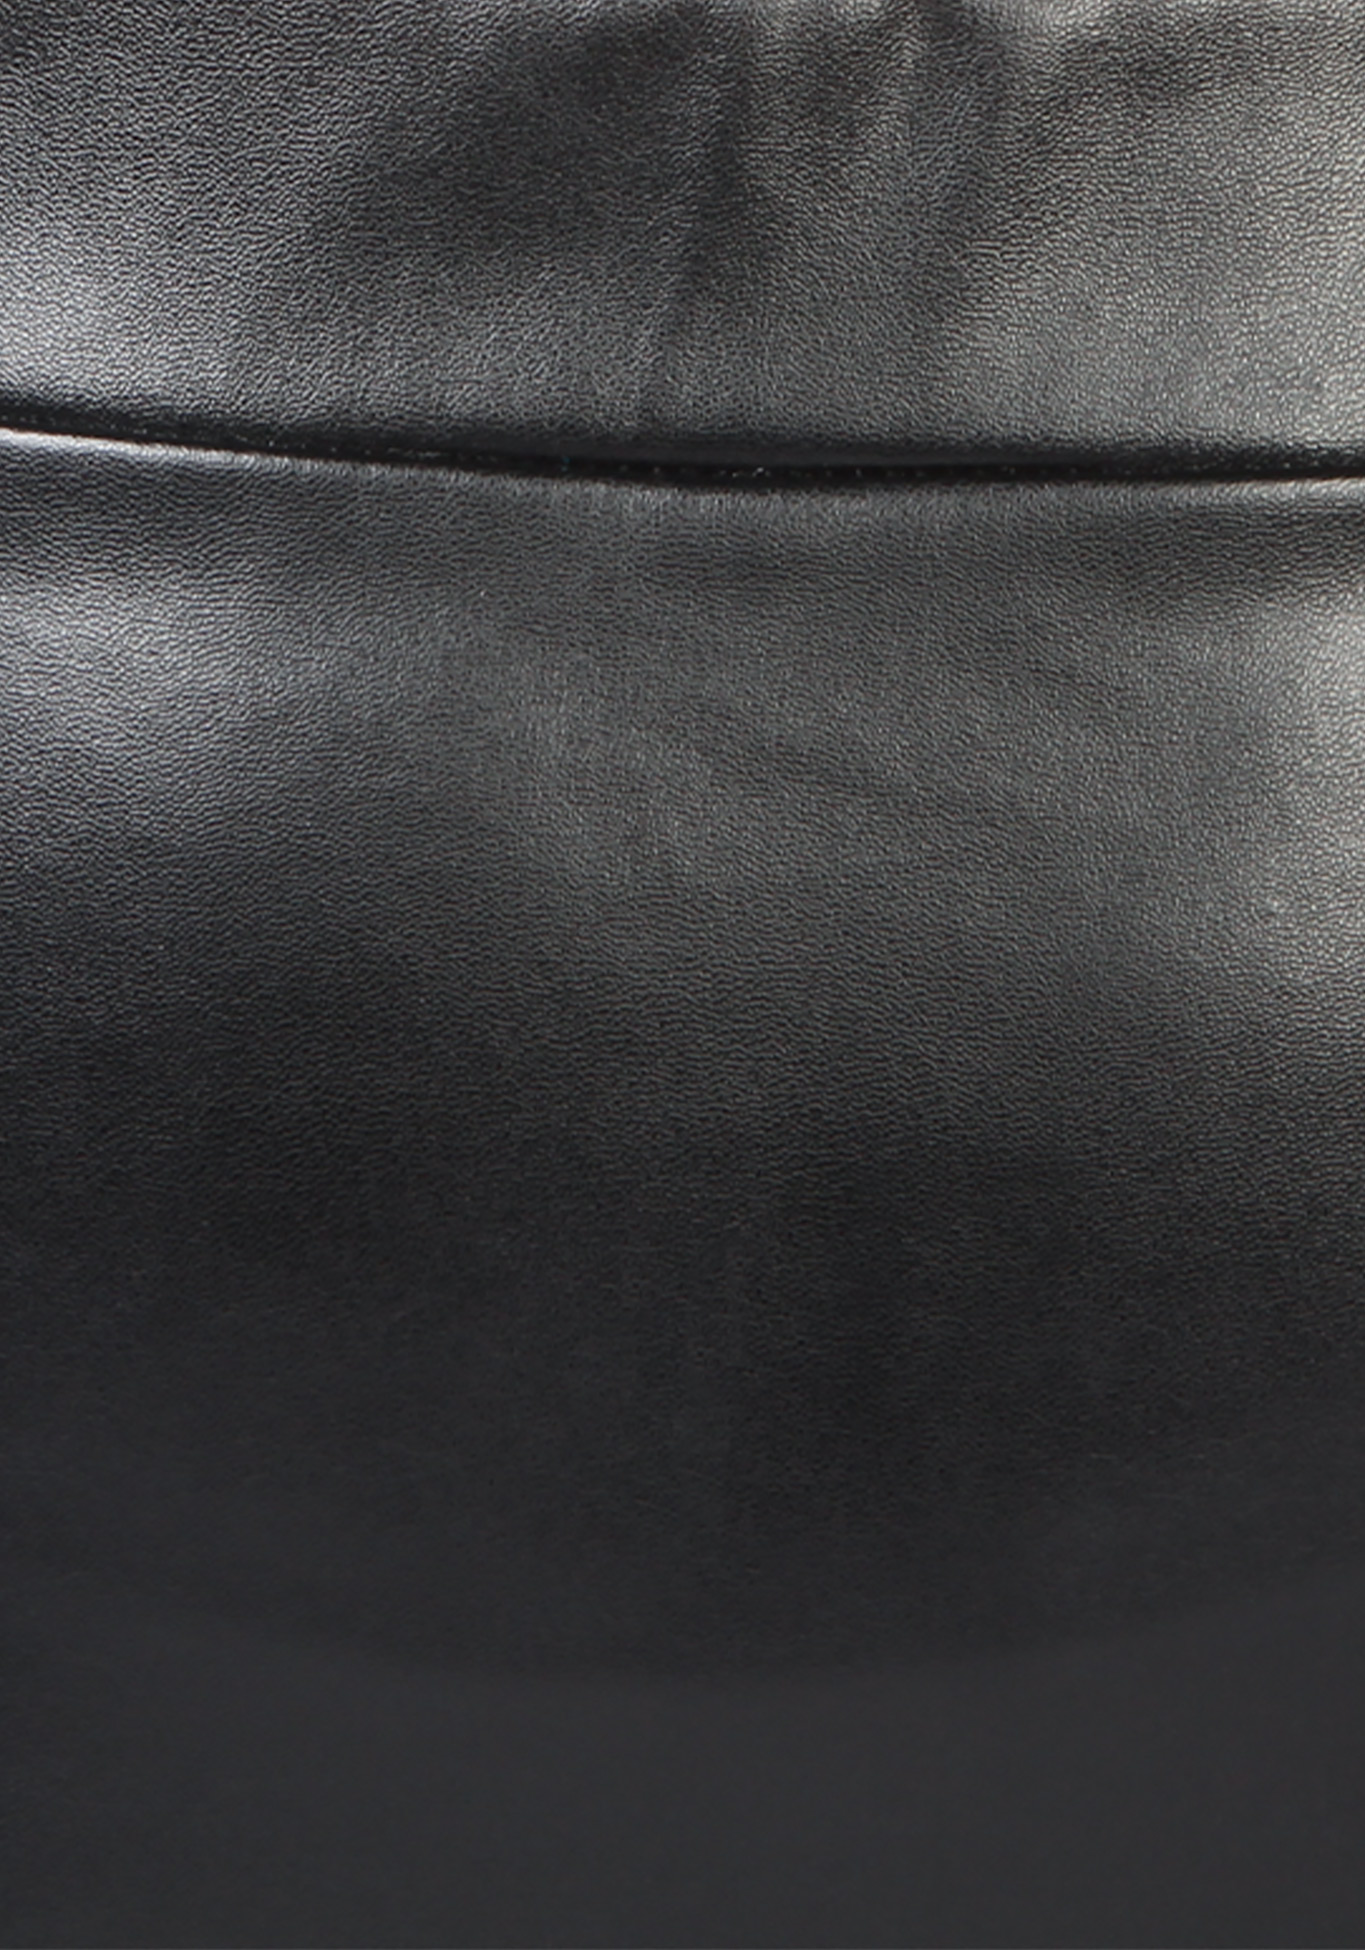 Юбка "Стокгольм", цвет черный, размер 46-48 прямая модель - фото 4